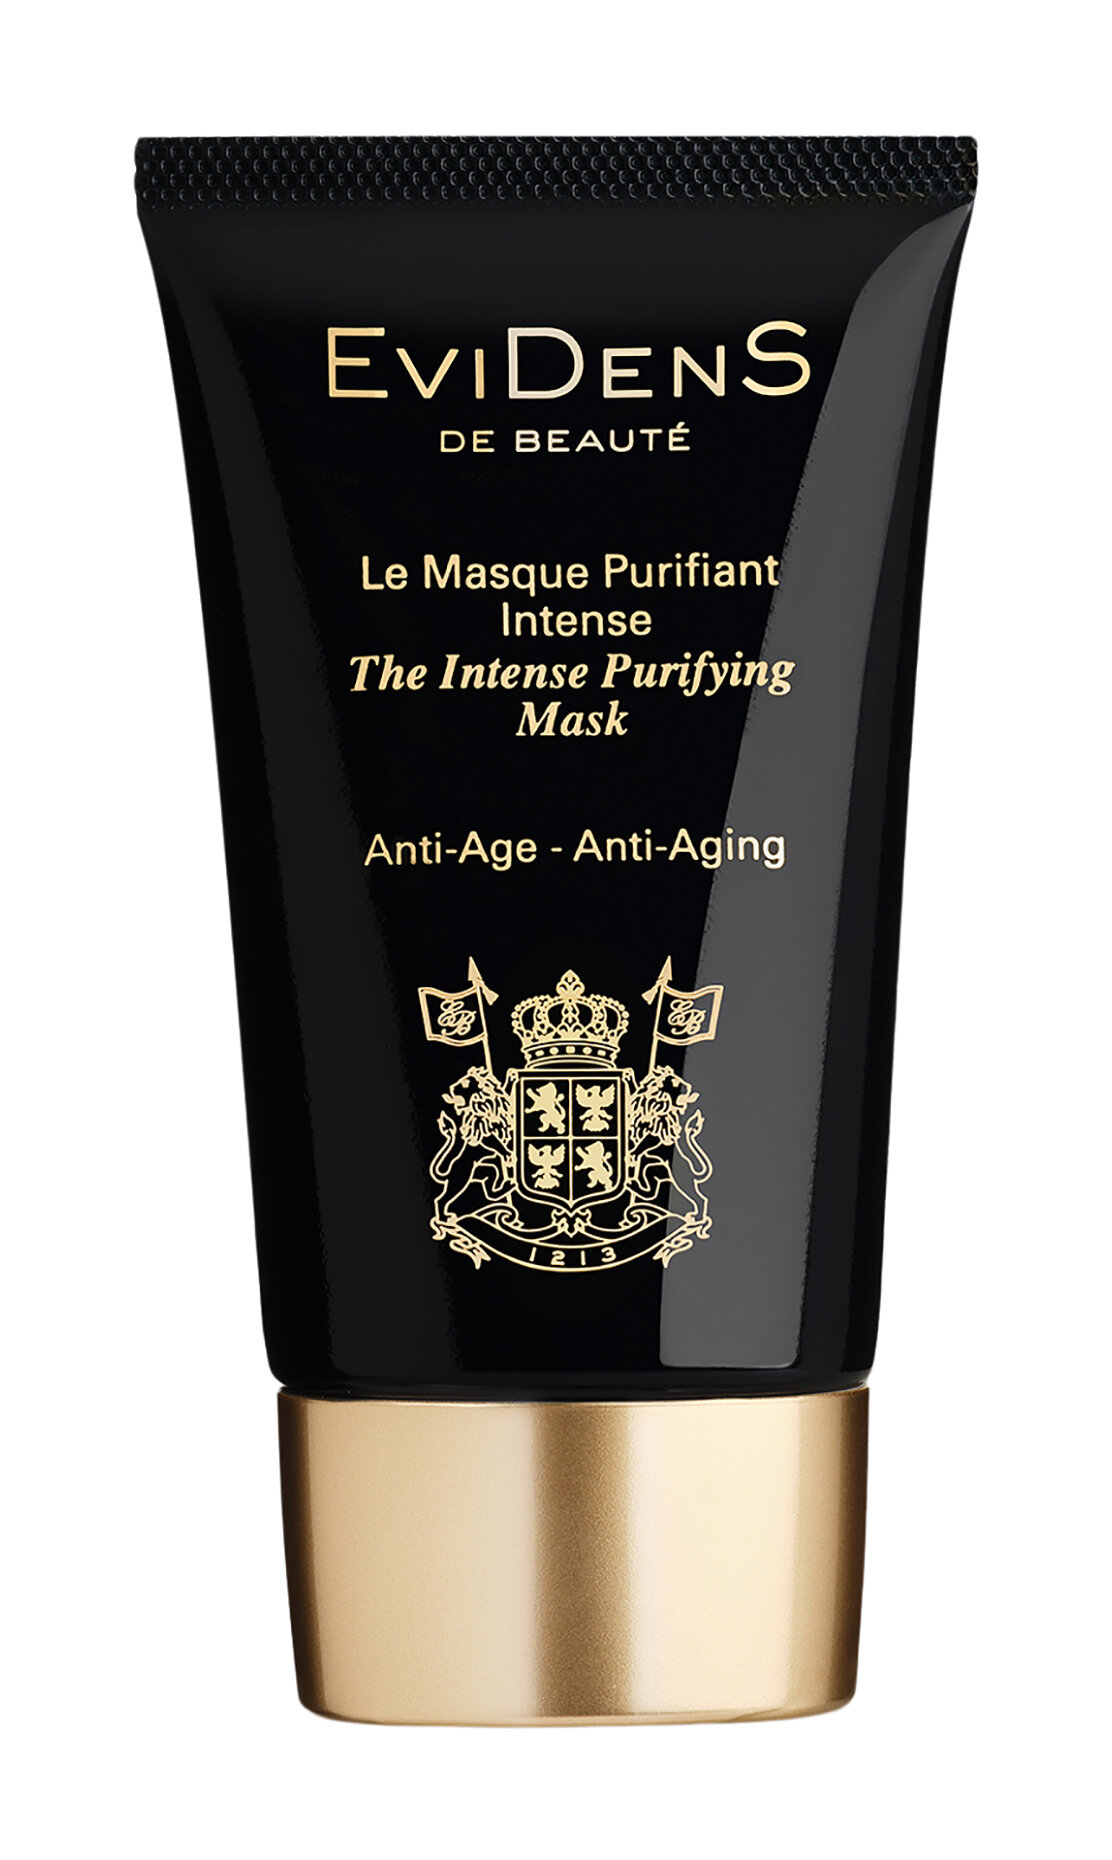 Интенсивная очищающая маска для лица Evidens de Beaute The Intense Purifying Mask /55 мл/гр.